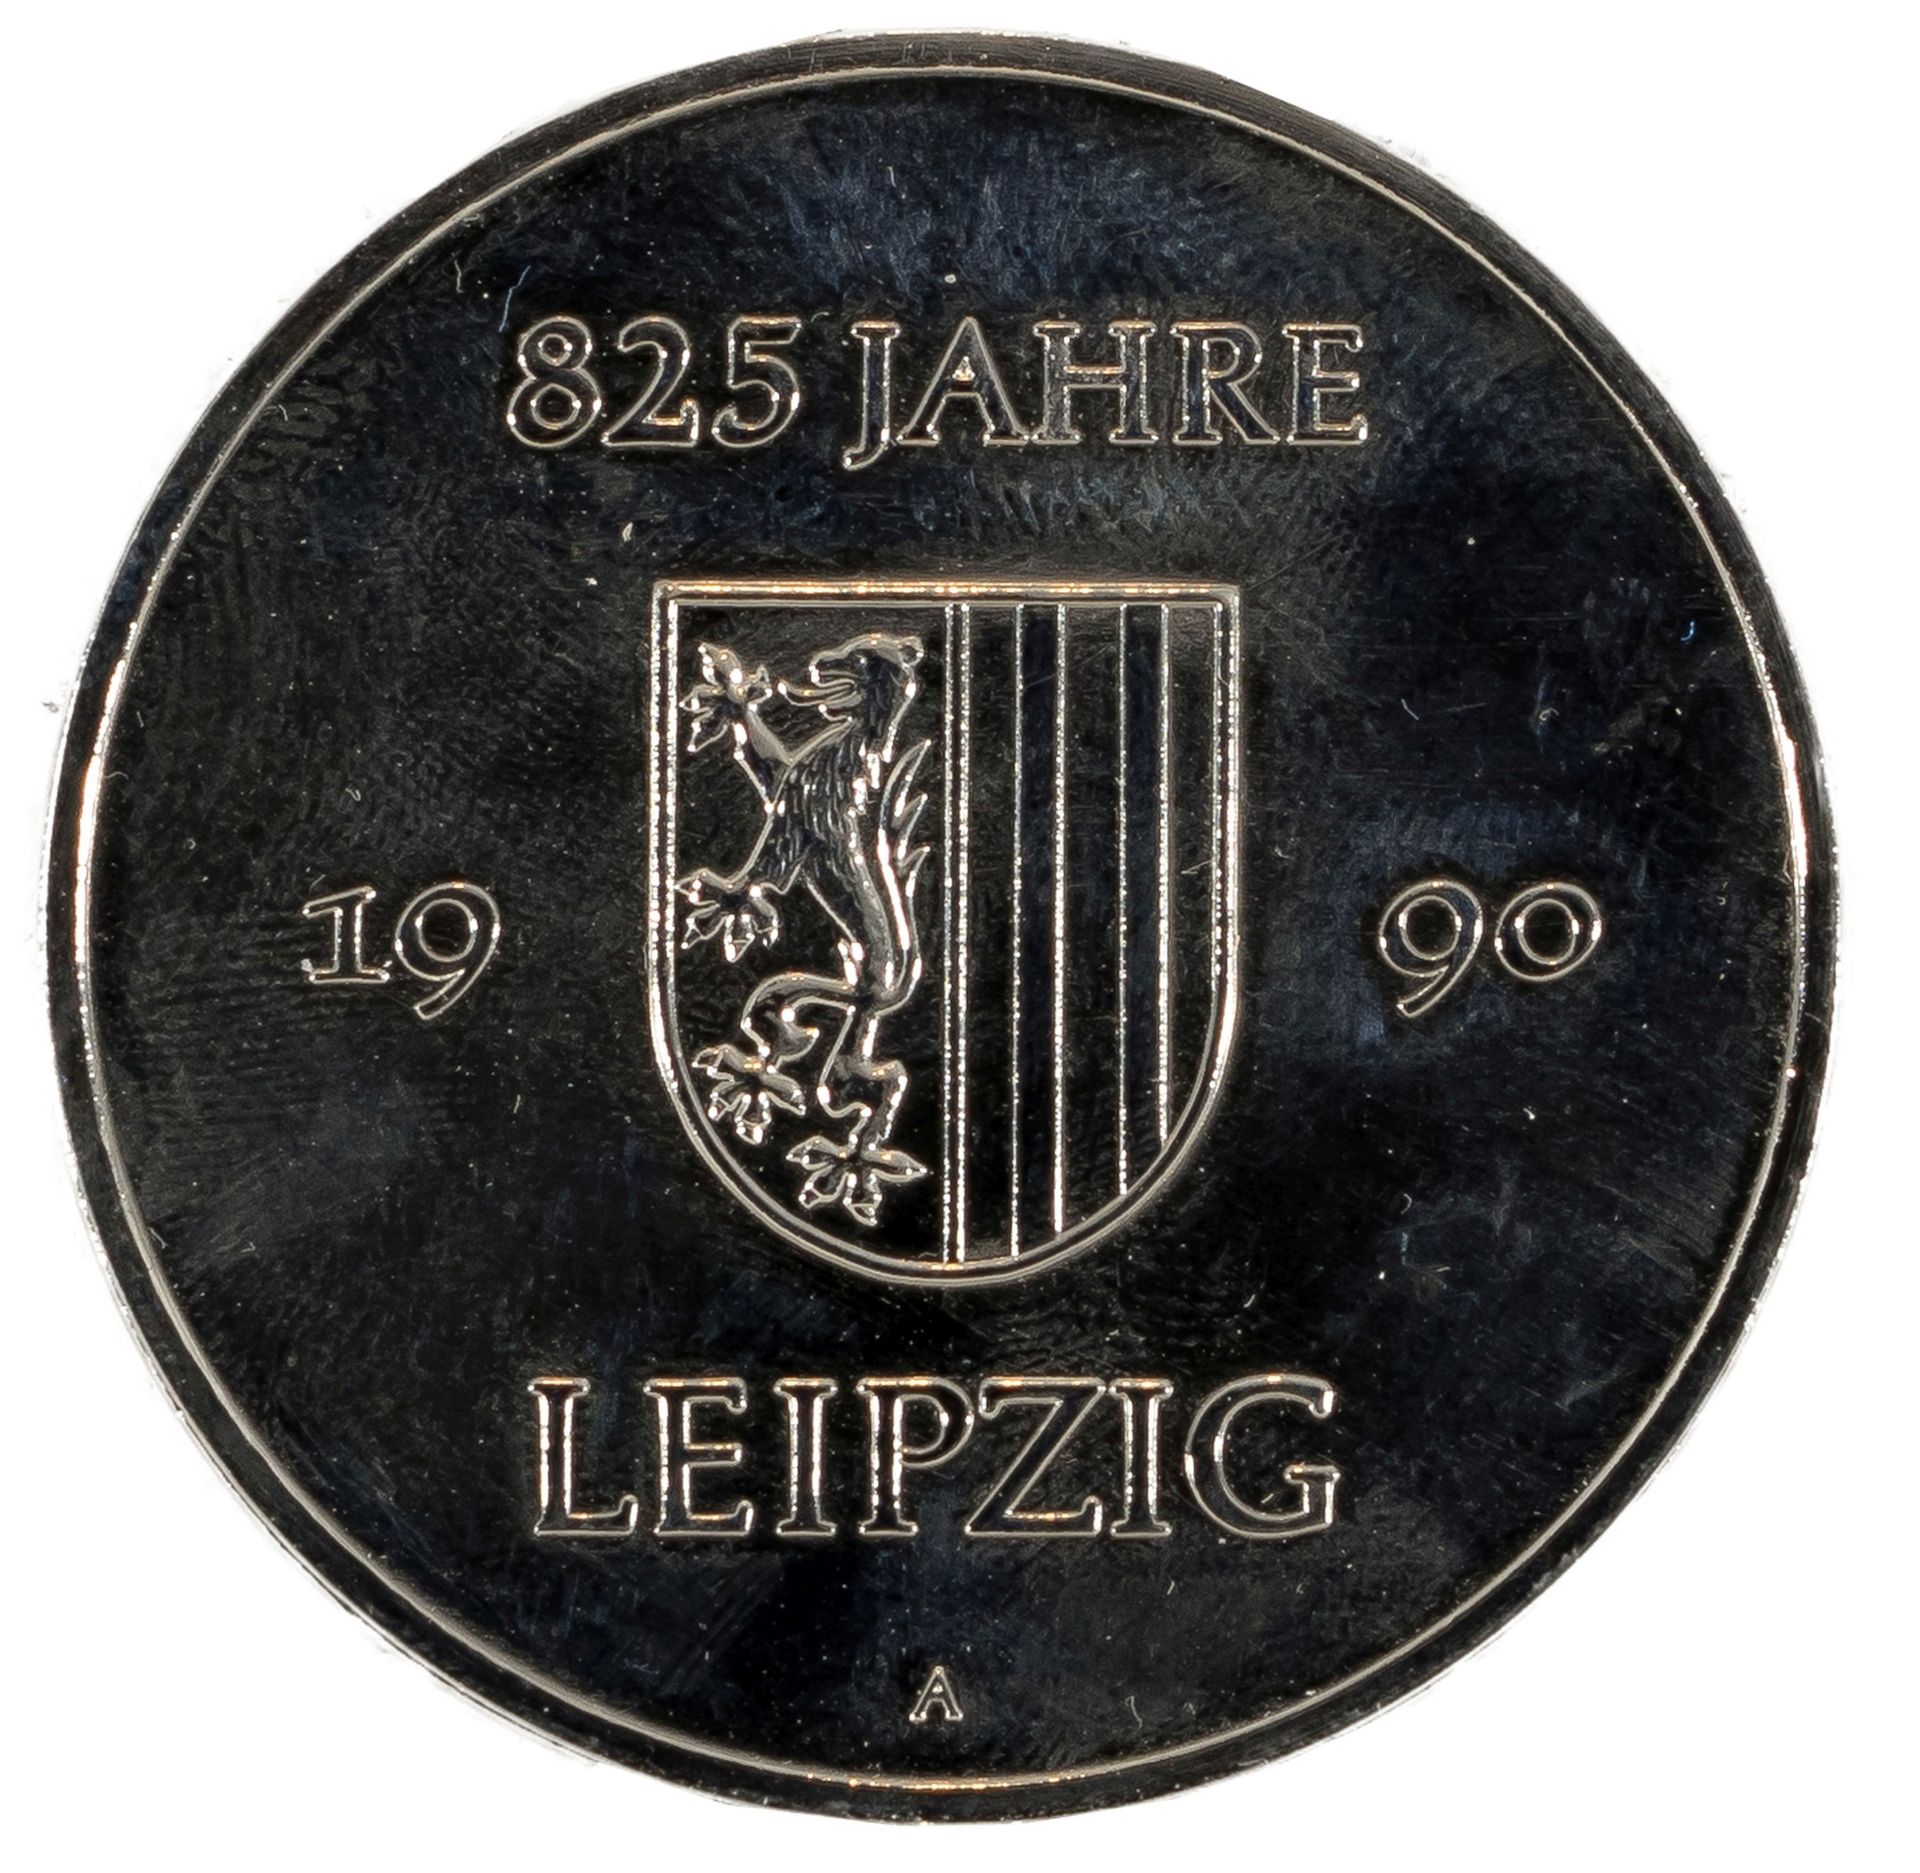 Konvolut von 3 Silbermedaillen zu "825 Jahre Leipzig" - Bild 5 aus 7